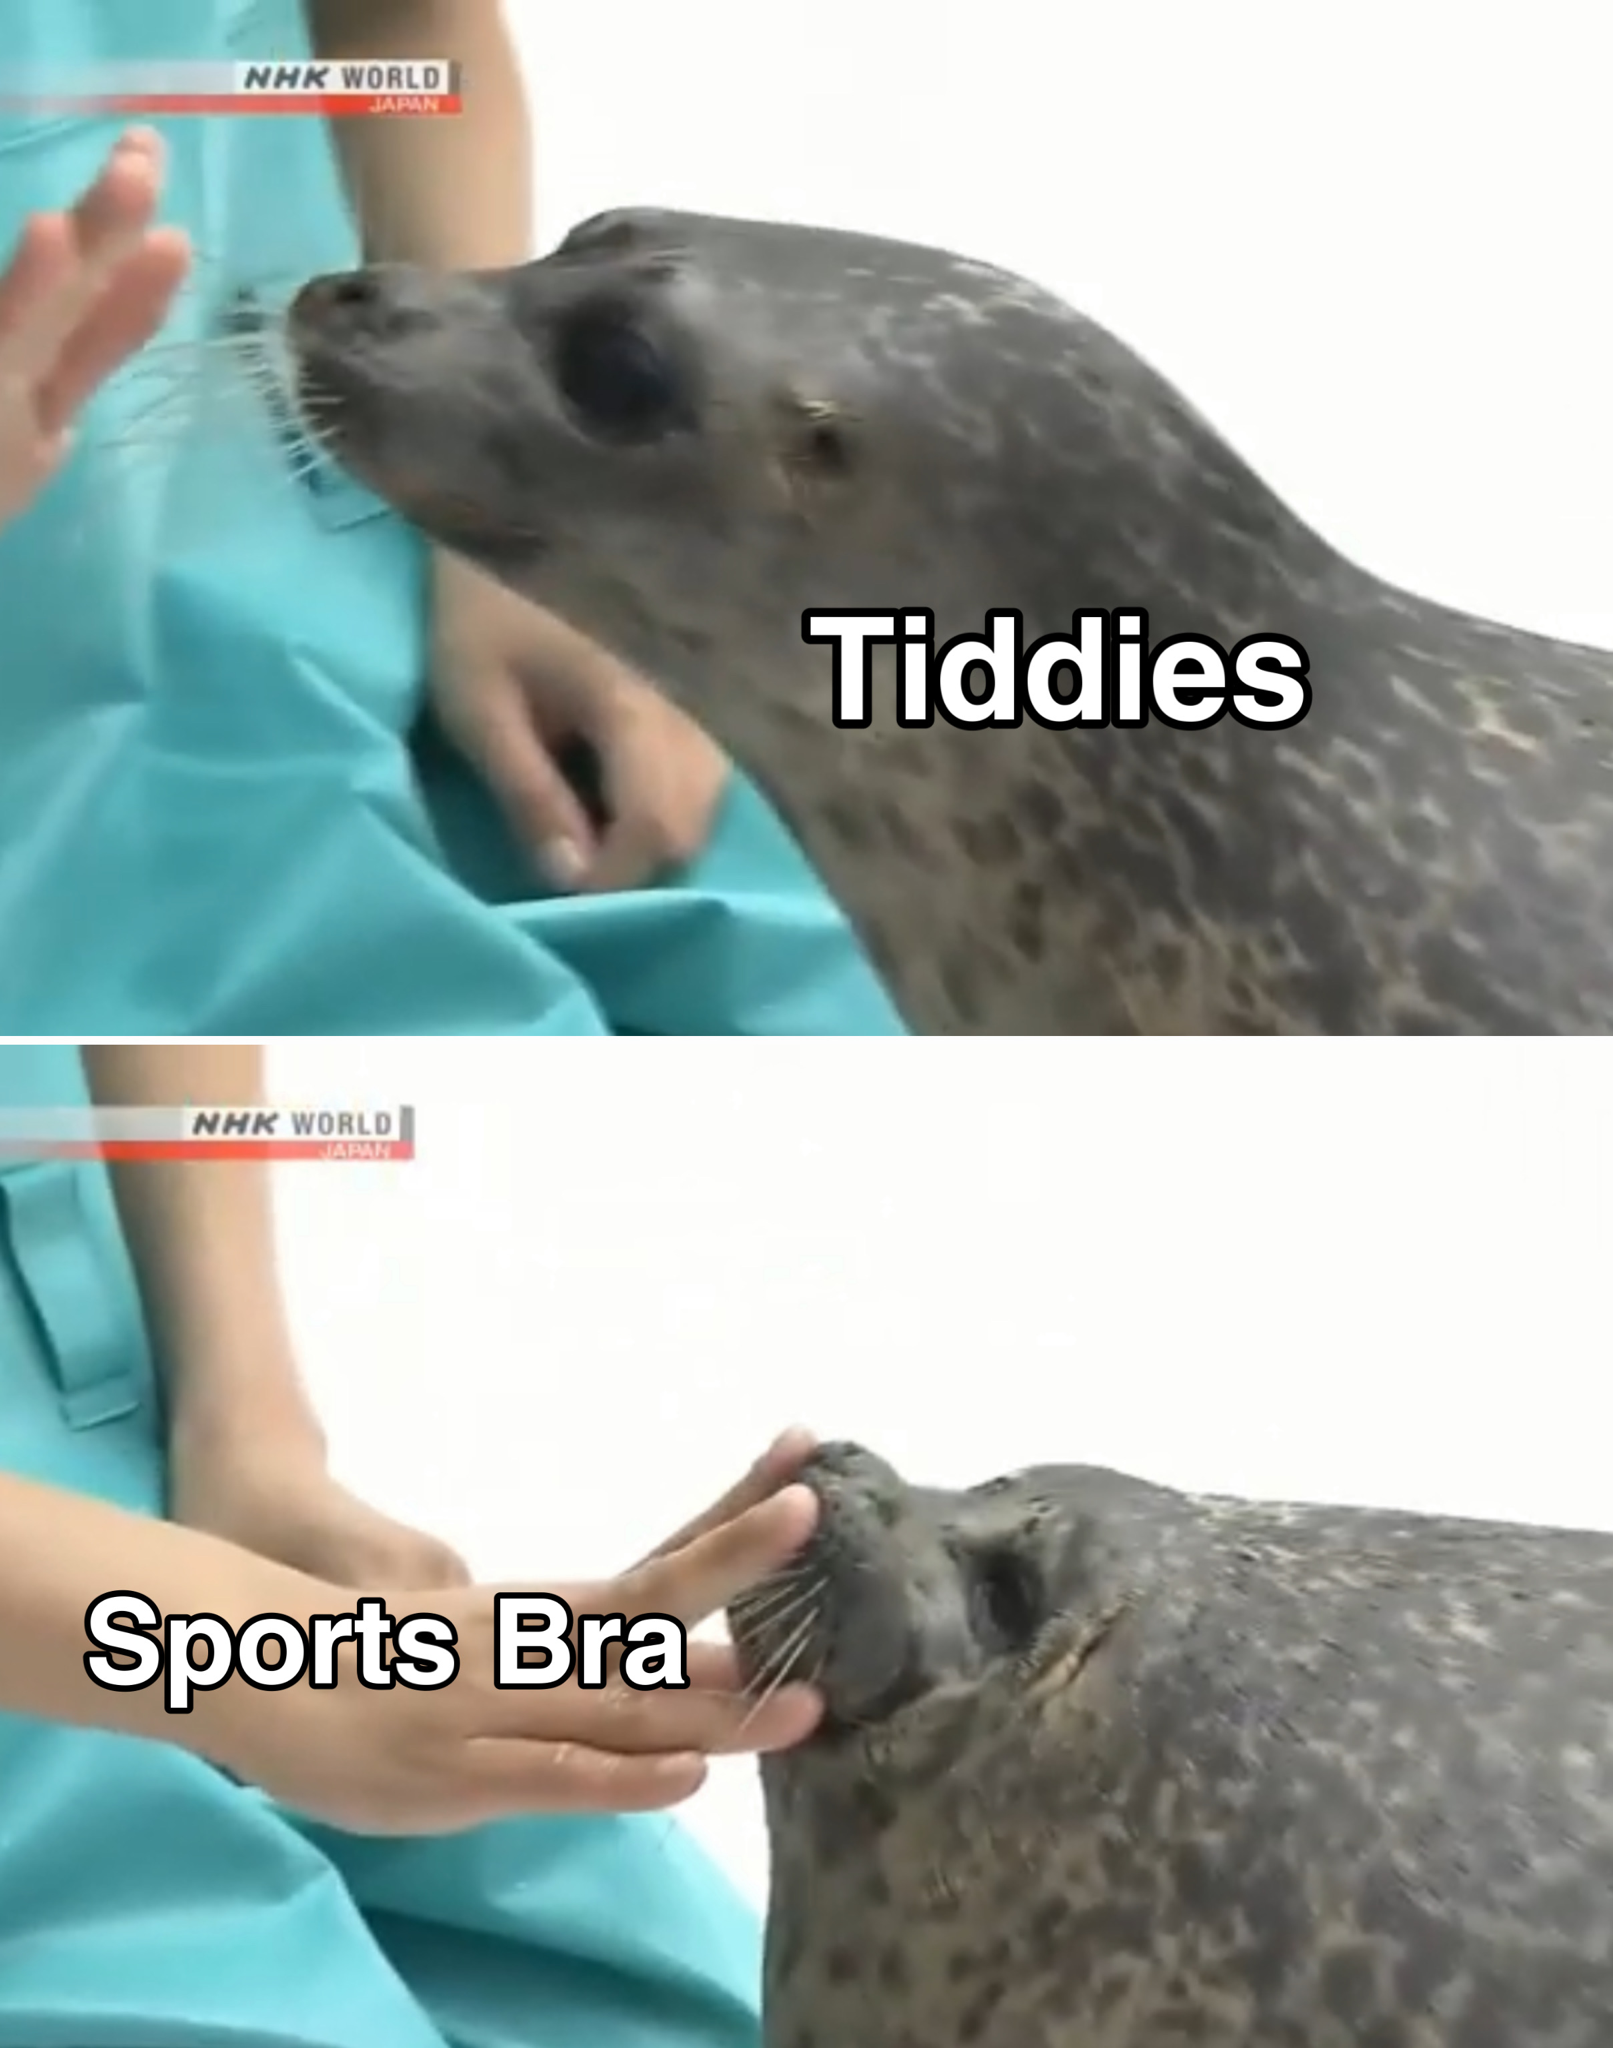 tiddies sports bra meme - Tiddies Nhk World Sports Bra